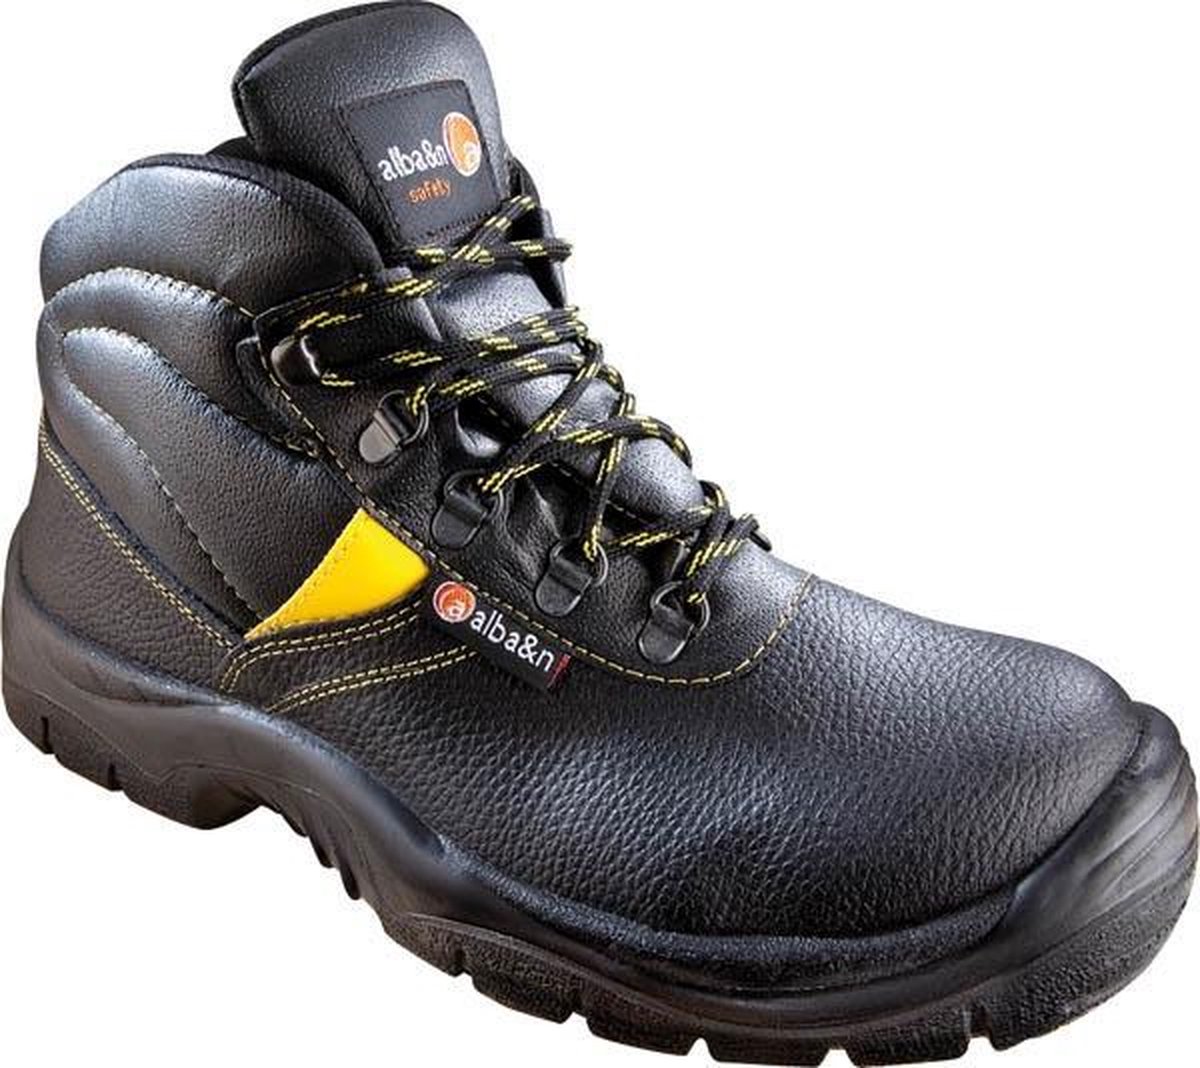 Chaussures de sécurité / travail, bottes S2, noires, taille 45 | bol.com